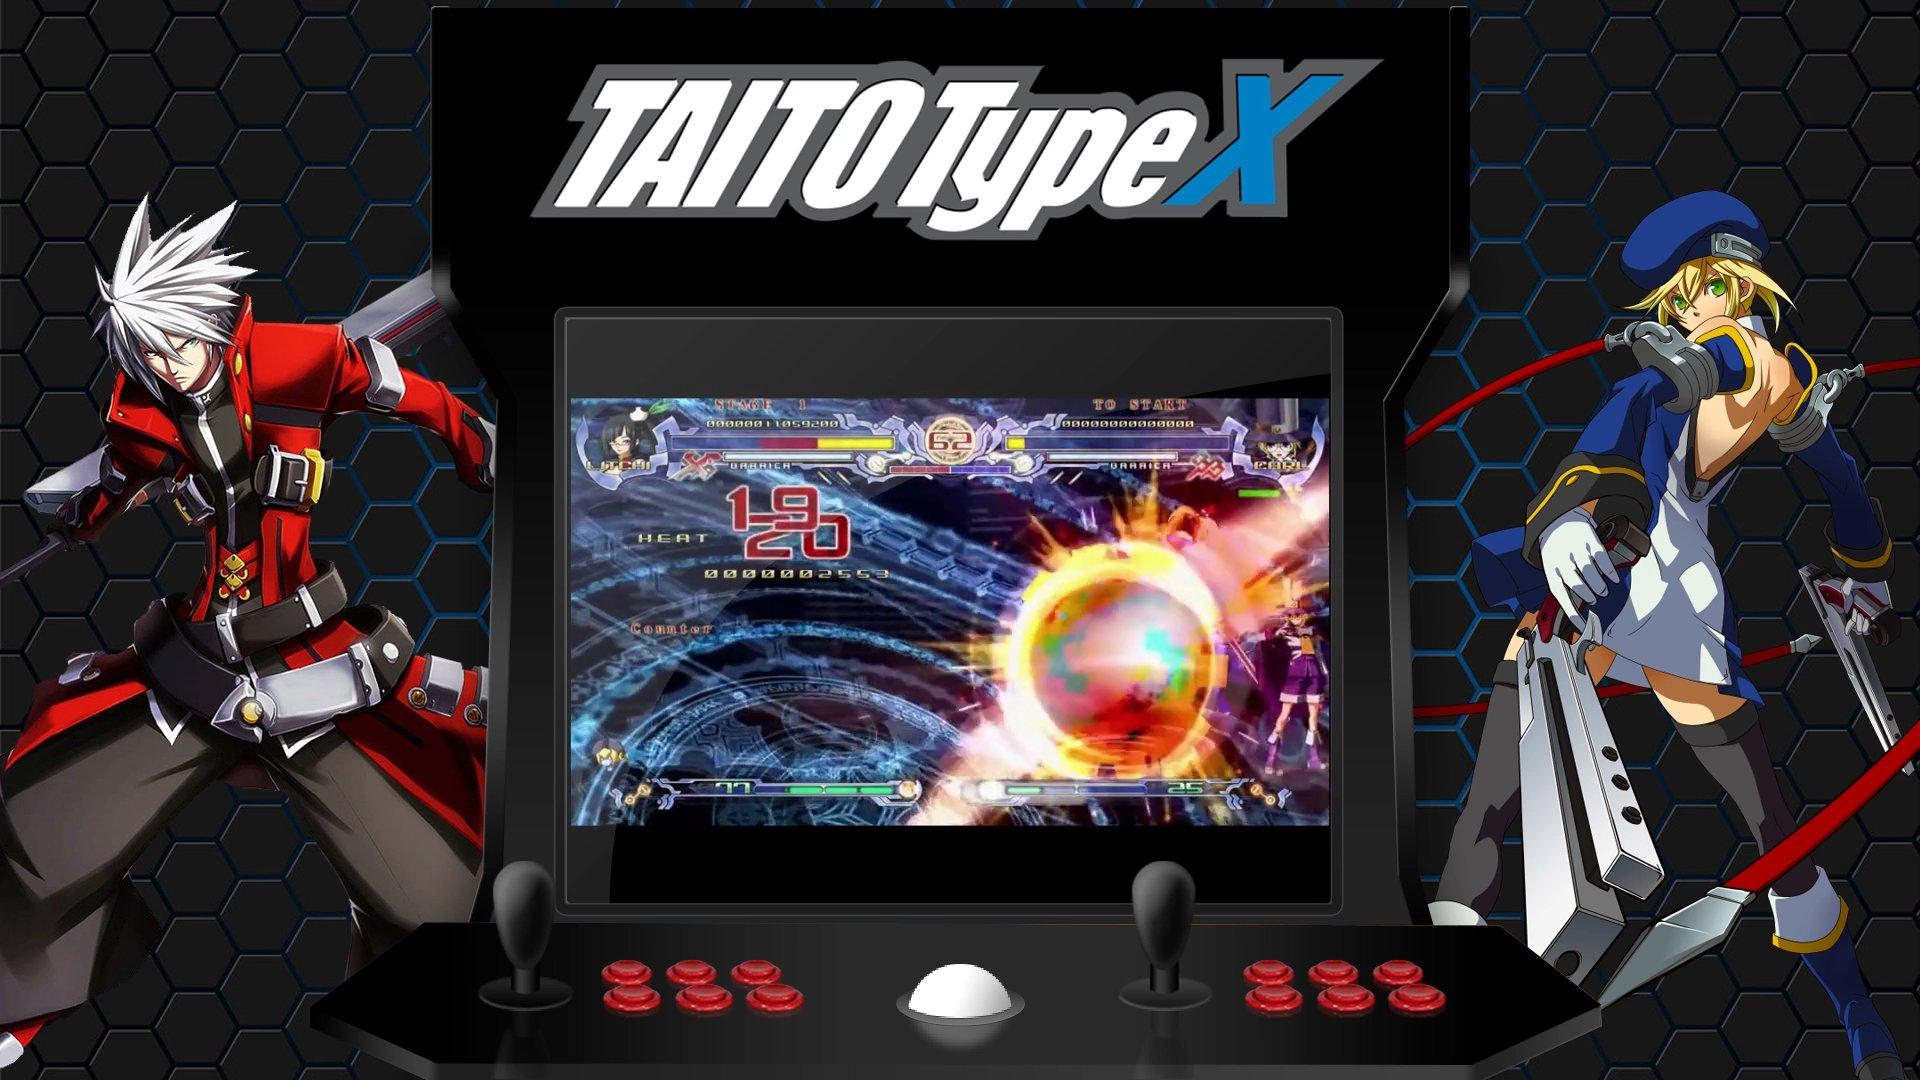 Taito Type X Unified Platform Videos 16x9 Hd Platform Videos Emumovies